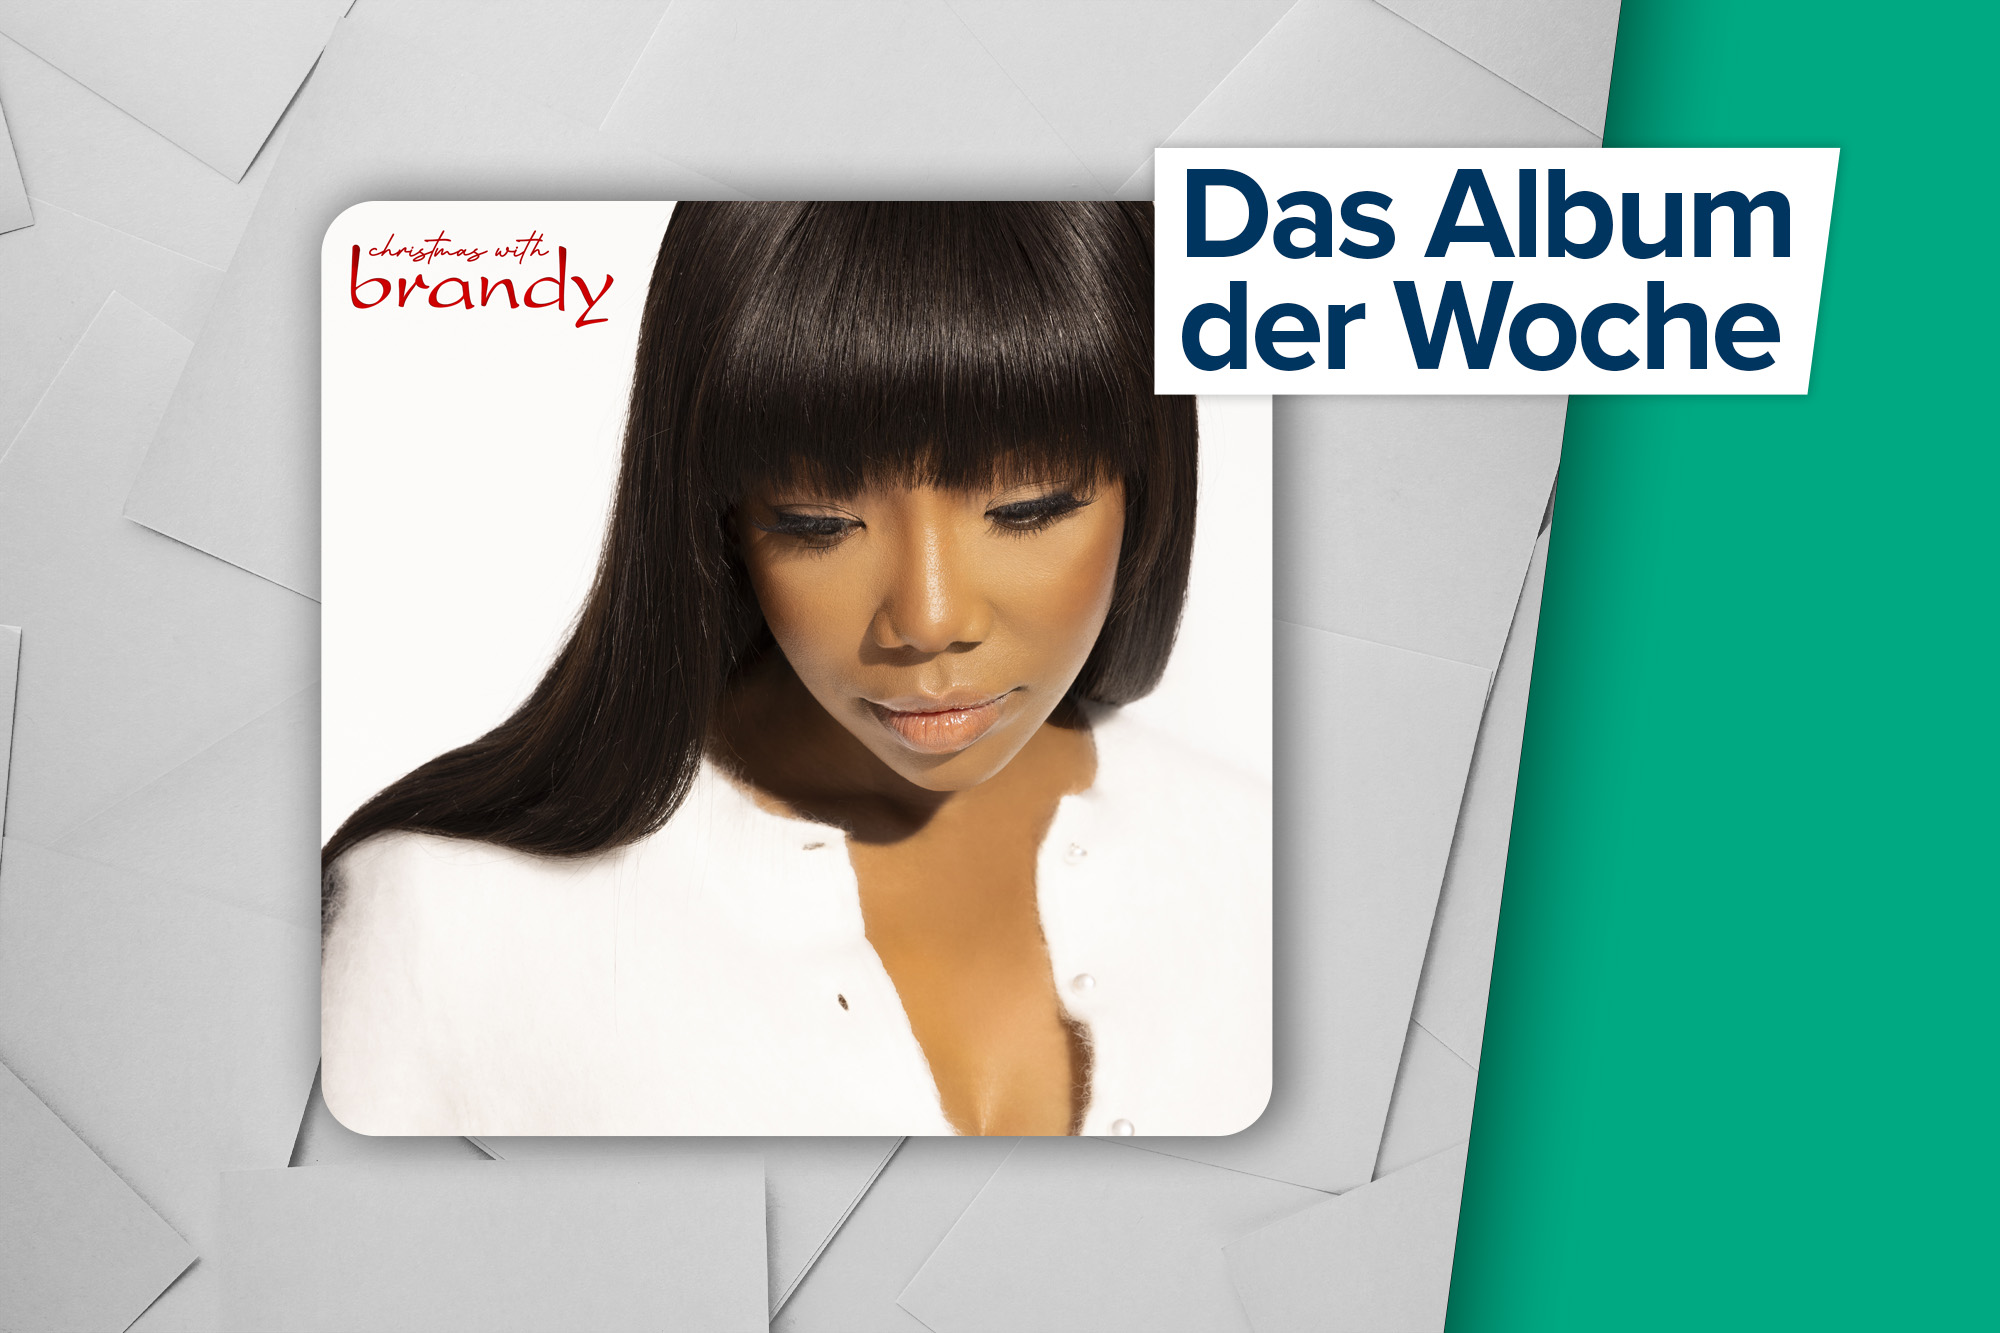 Das Album der Woche: "Christmas with Brandy" von Brandy (Universal Music)